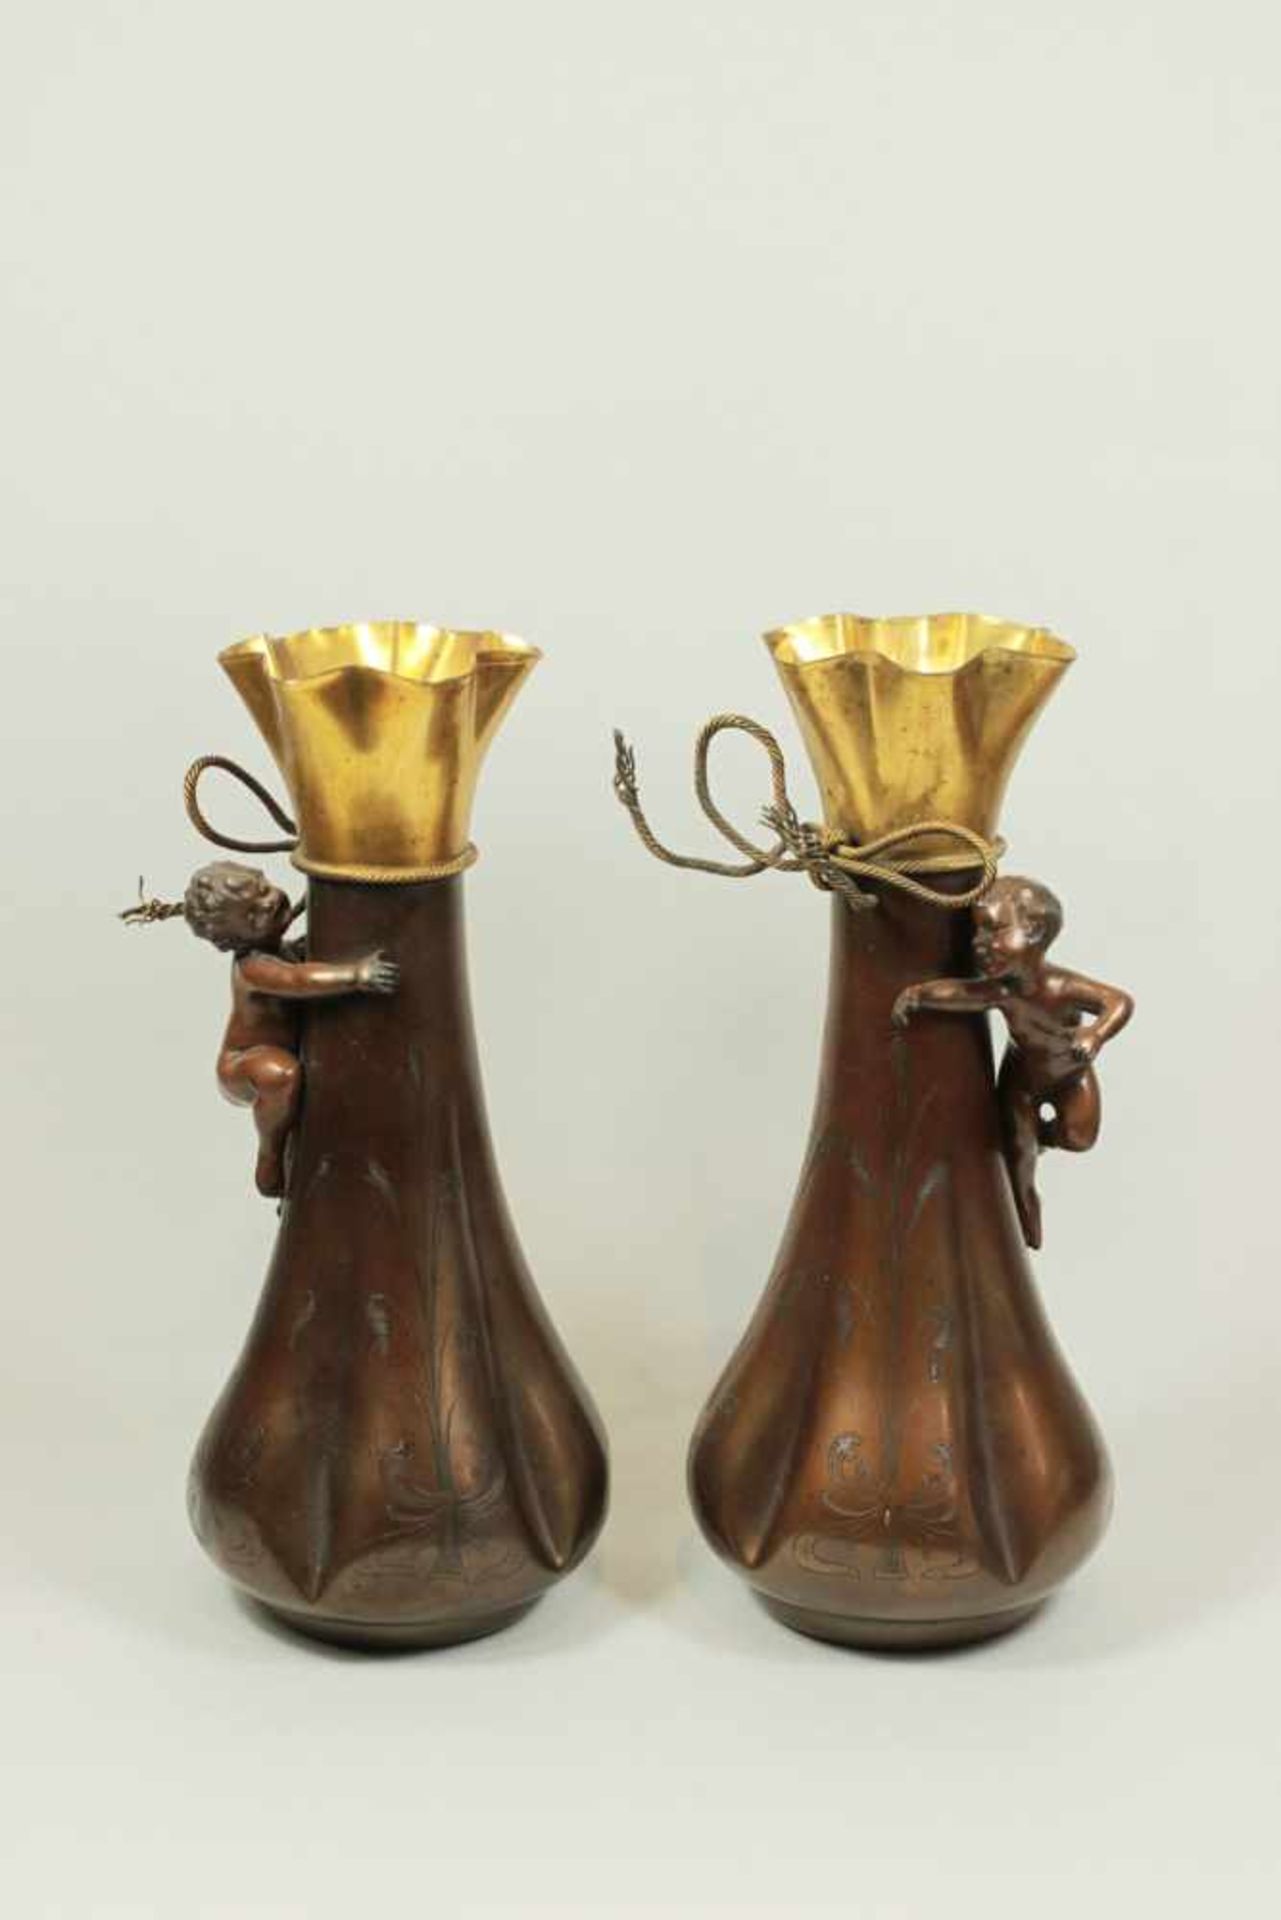 Paar Vasen mit Putti, Messing braun lackiert, nach unten goldronierter Körper, gewellte, goldfarbene